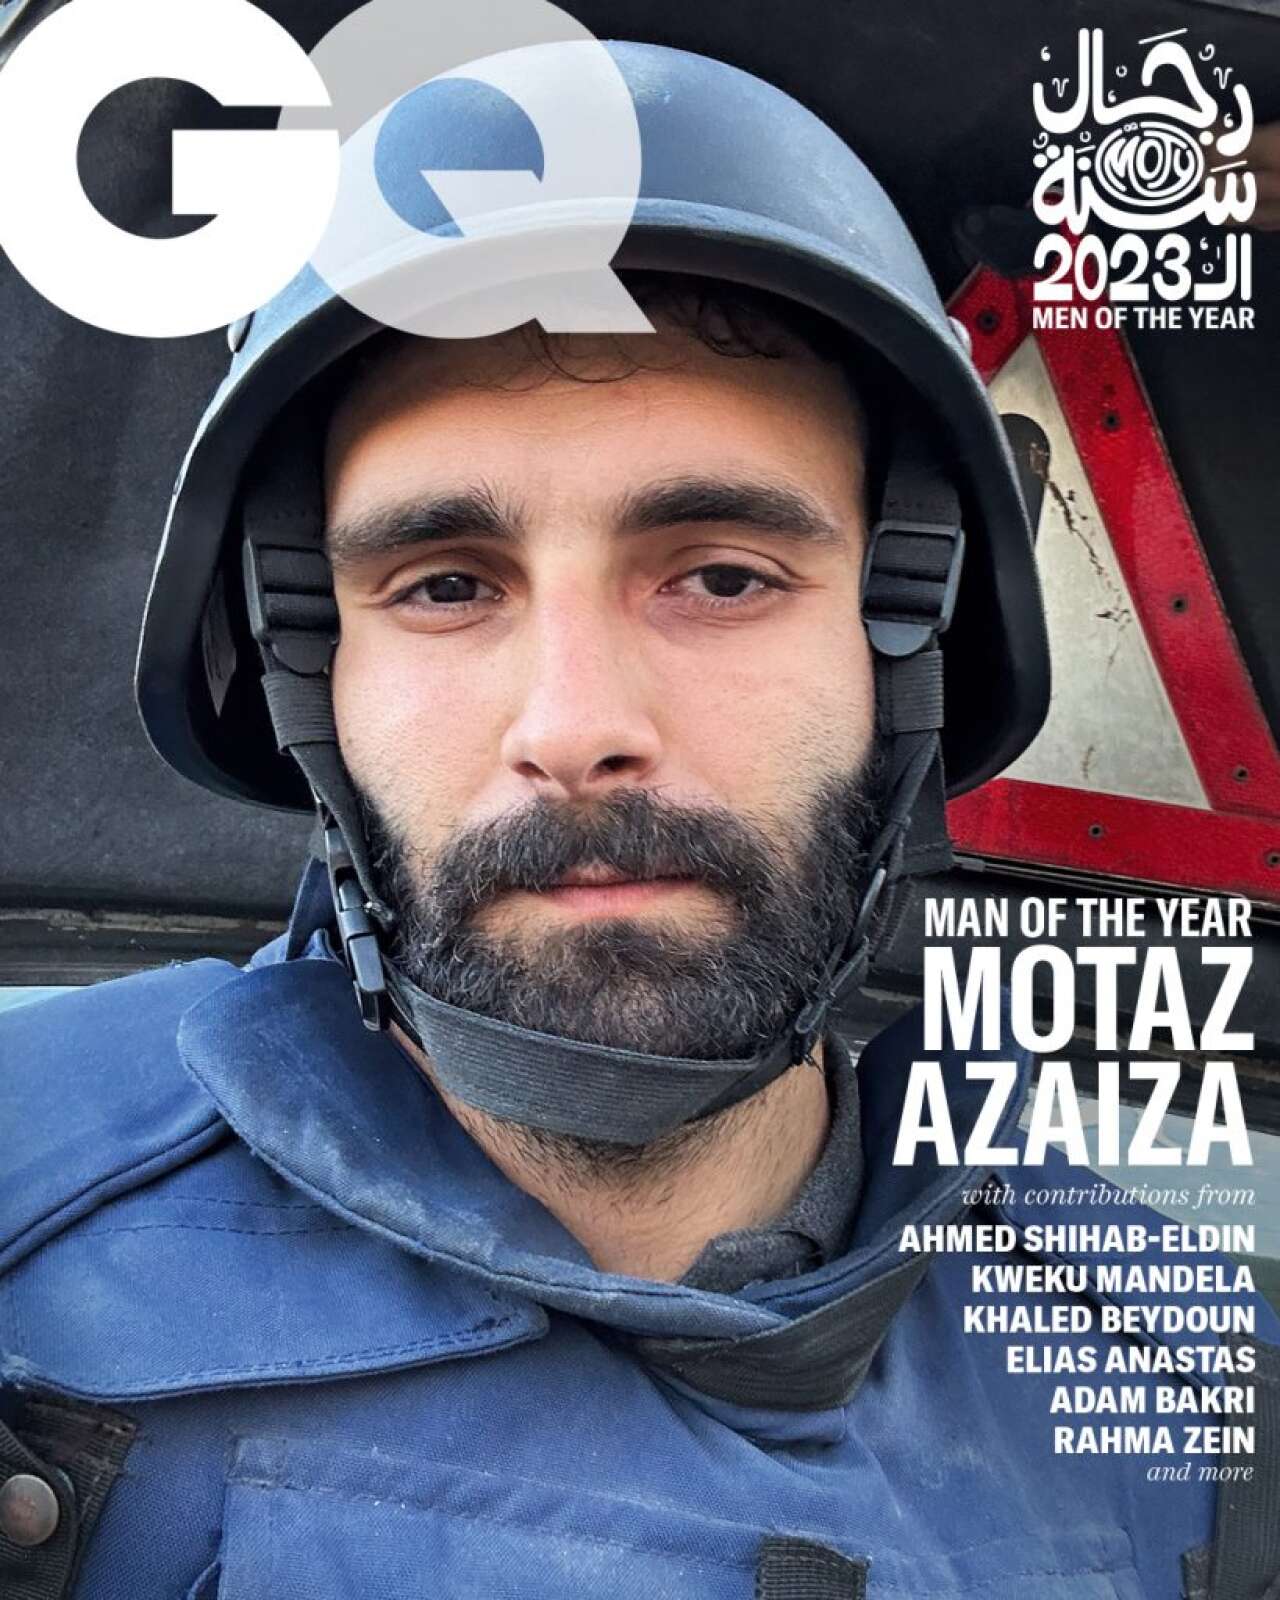 Le journaliste palestinien Motaz Azaiza, “homme de l’année” pour “GQ